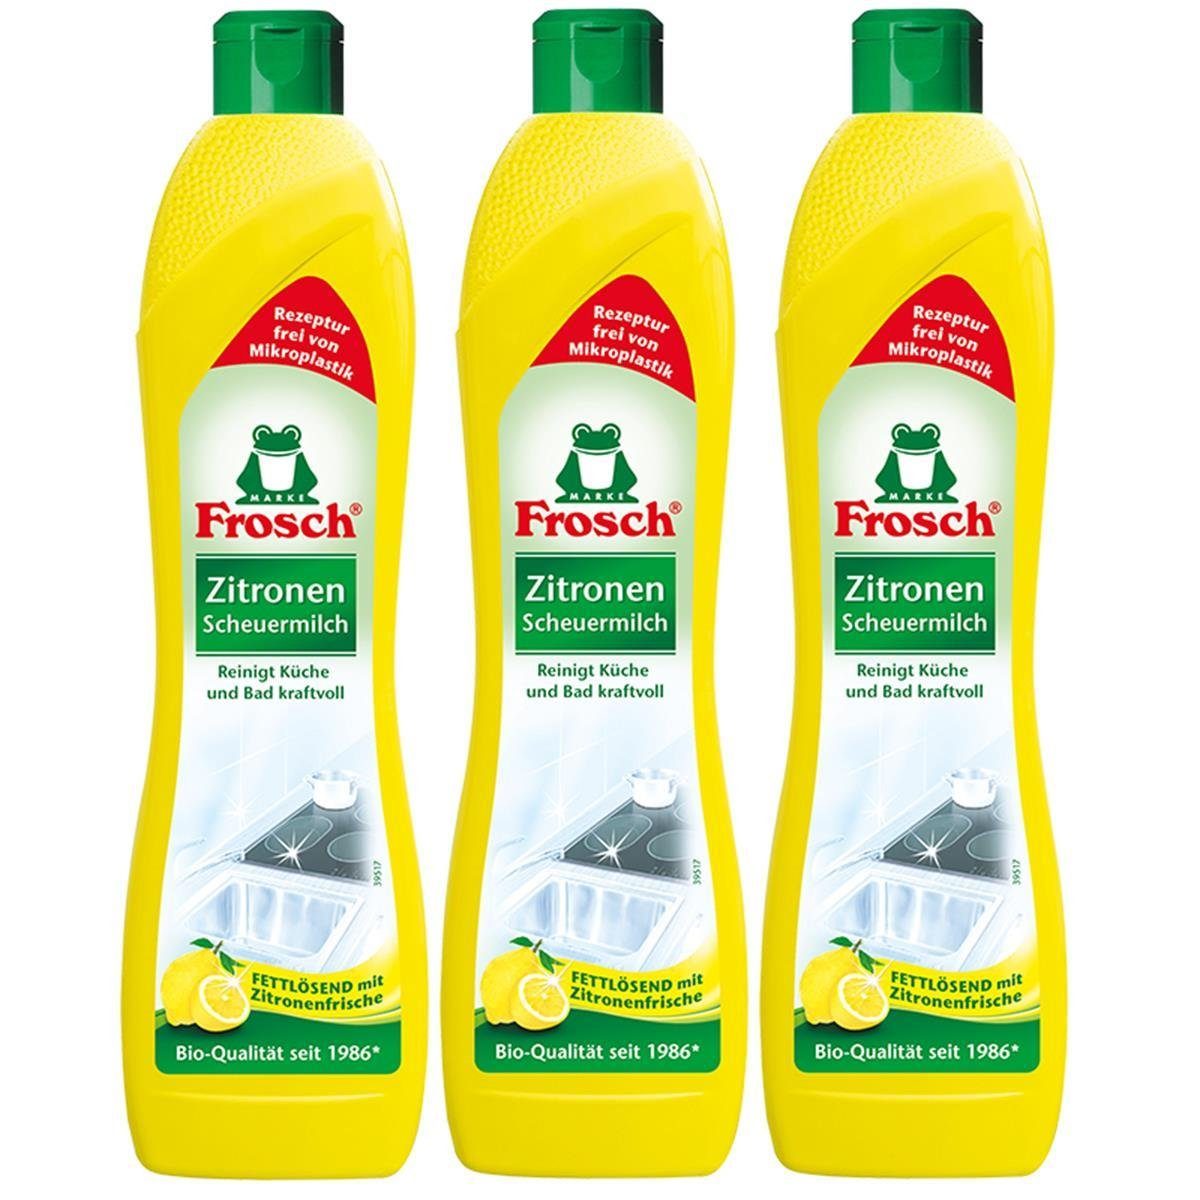 FROSCH 3x Frosch Zitronen Scheuermilch 500 ml - Reinigt Bad und Küche kraftvo Spezialwaschmittel